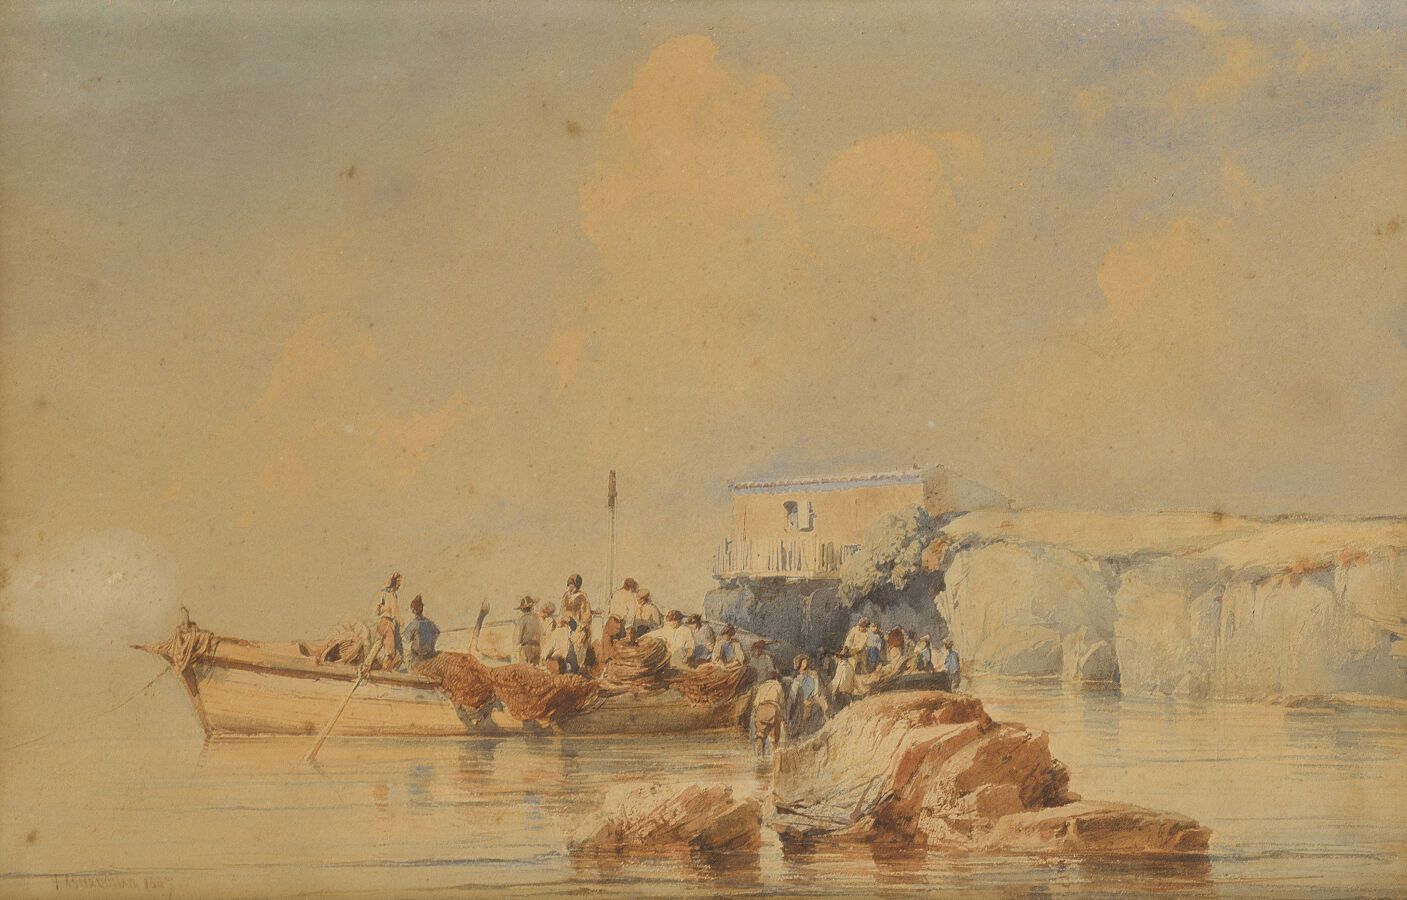 Null Vincent COURDOUA N (1810-1893)

Die Rückkehr der Fischer

Aquarell, signier&hellip;